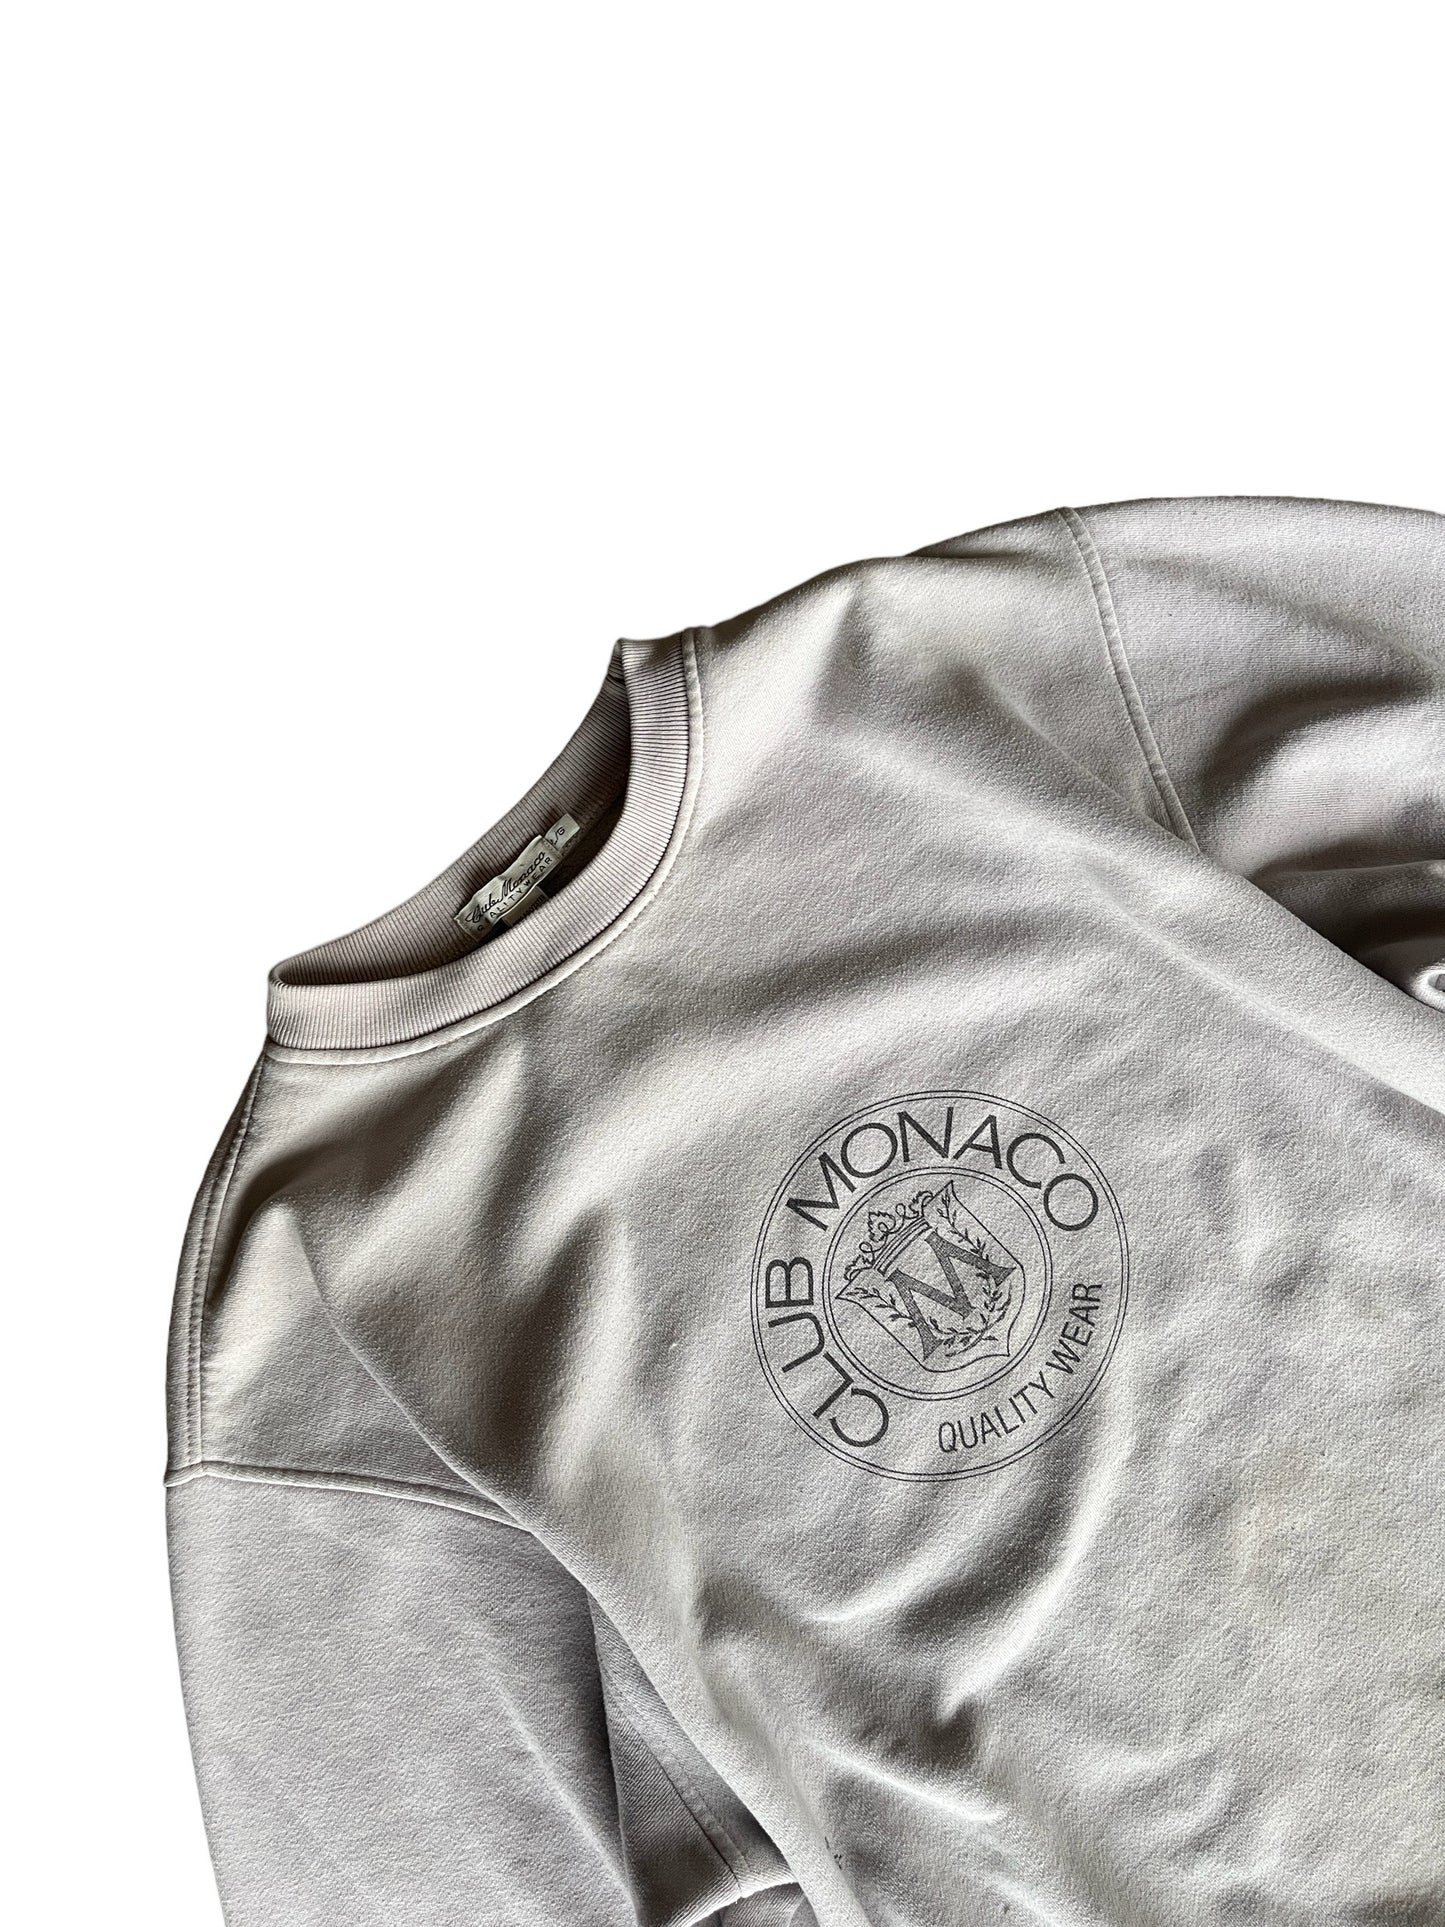 Vintage Club Monaco Sweatshirt Cream Grey